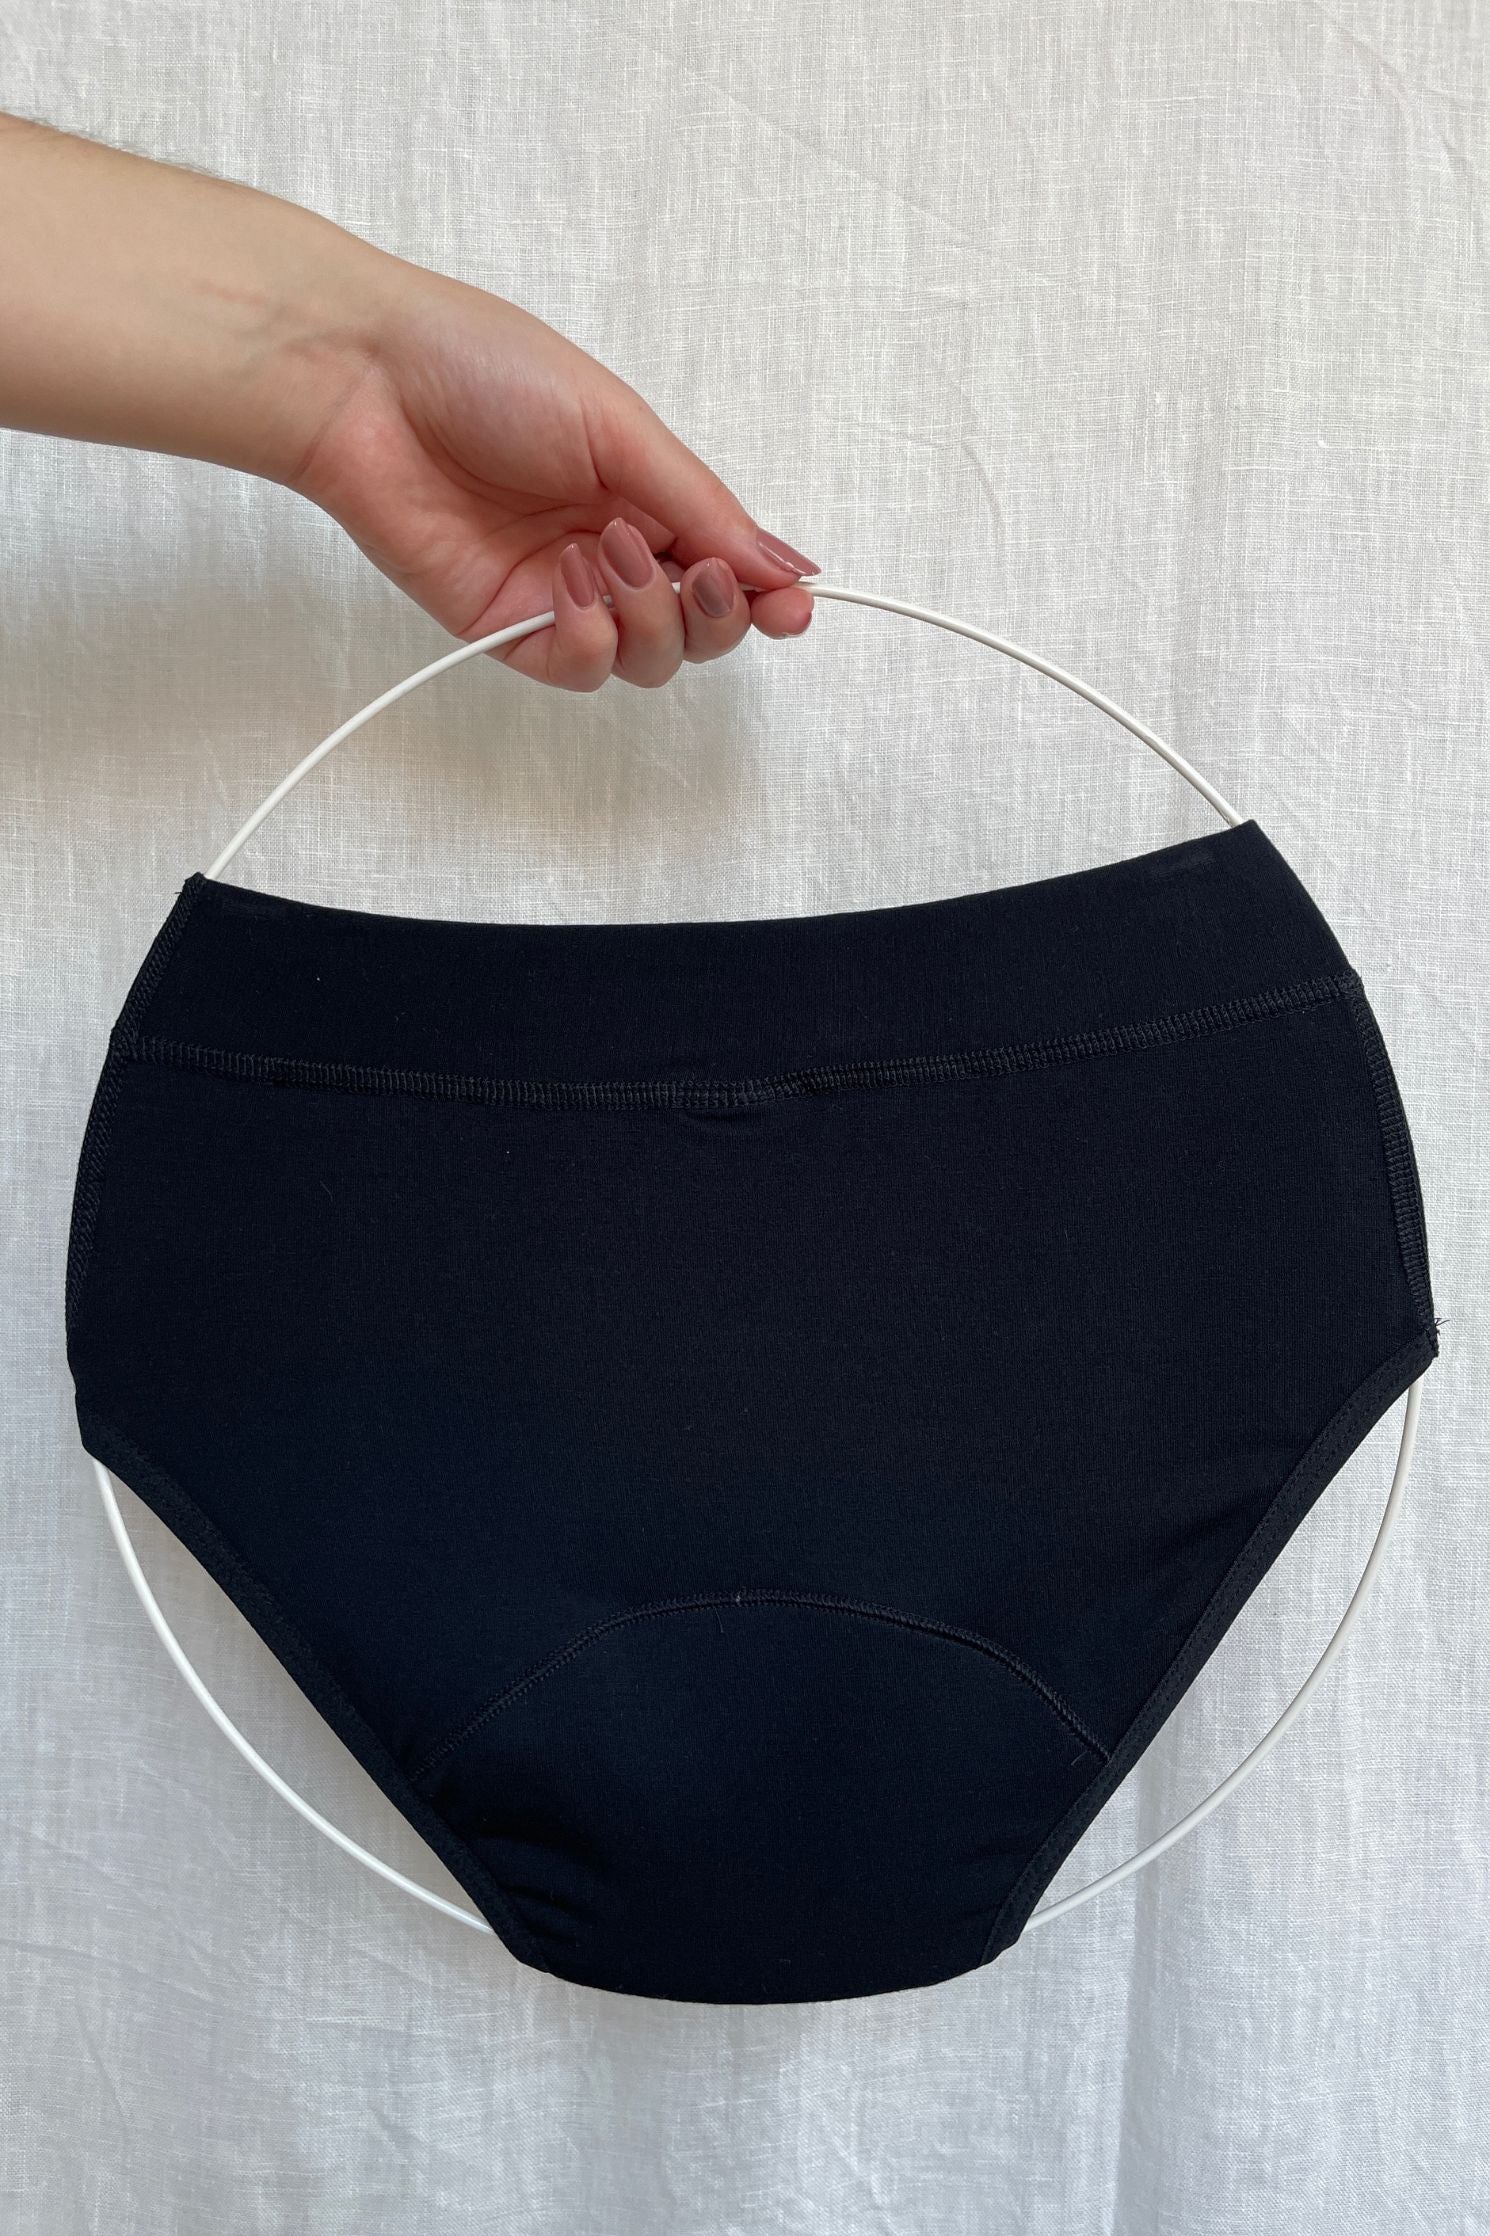 Produktová fotografie menstruačních kalhotek pro dívky. Zadní strana.